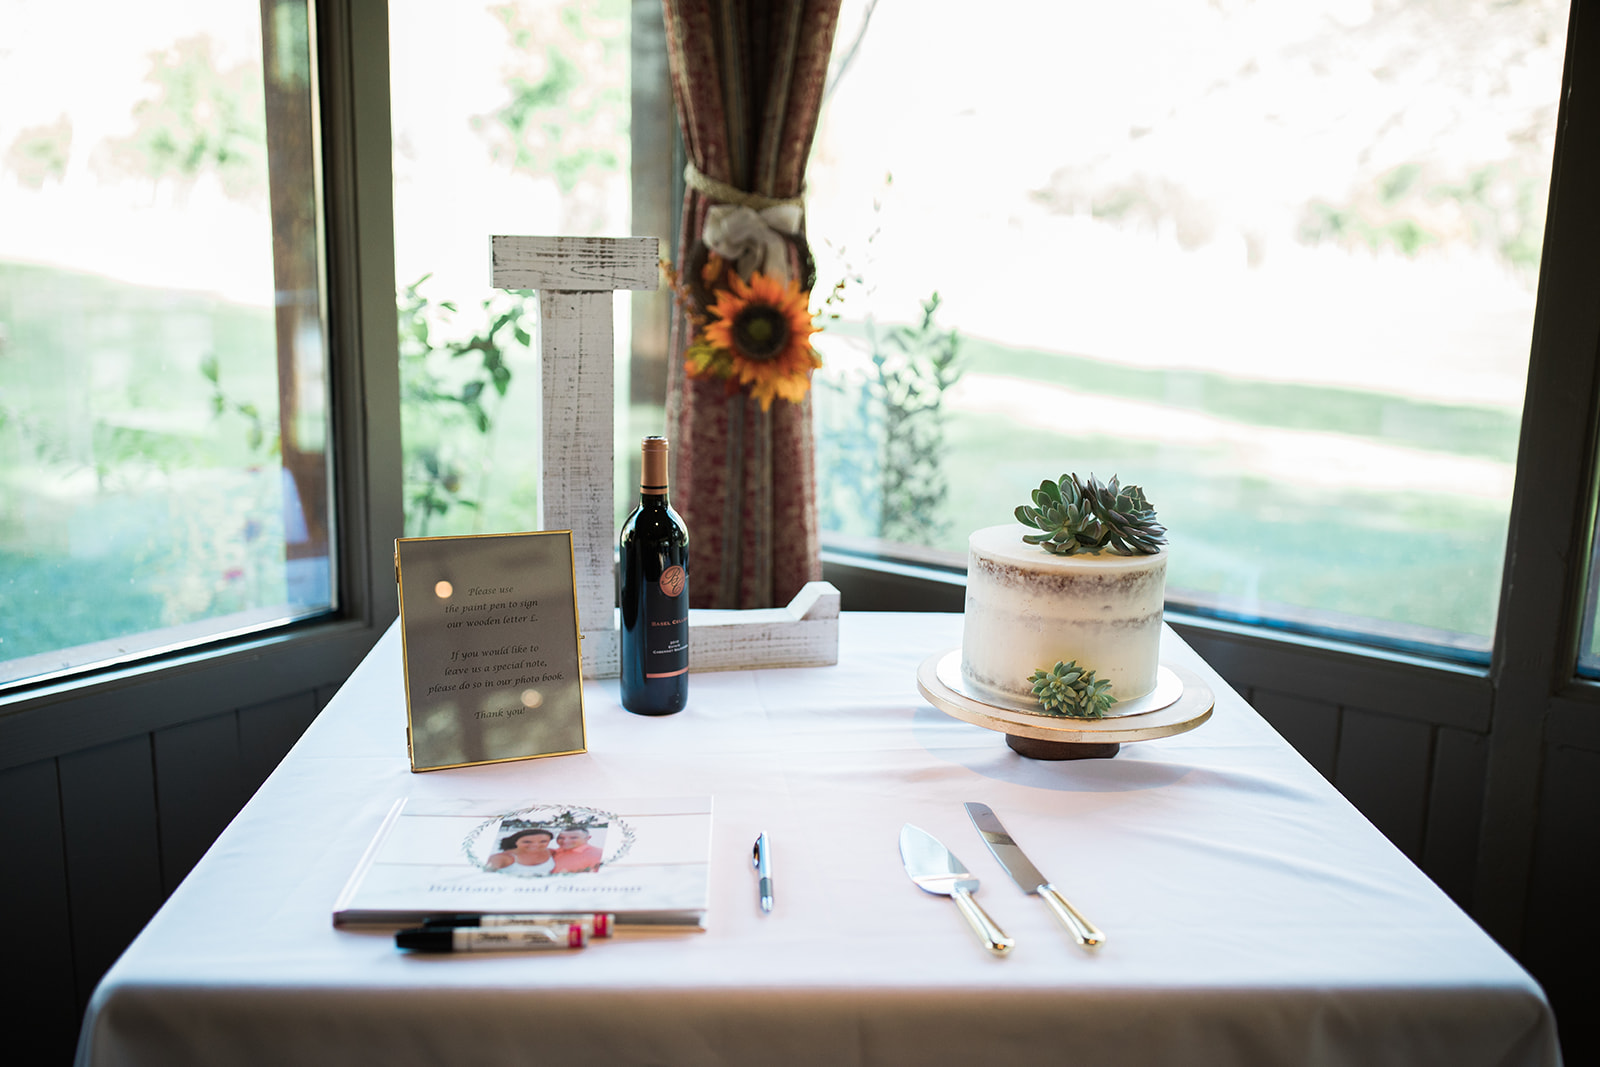 table set for Zion National Park elopement reception 